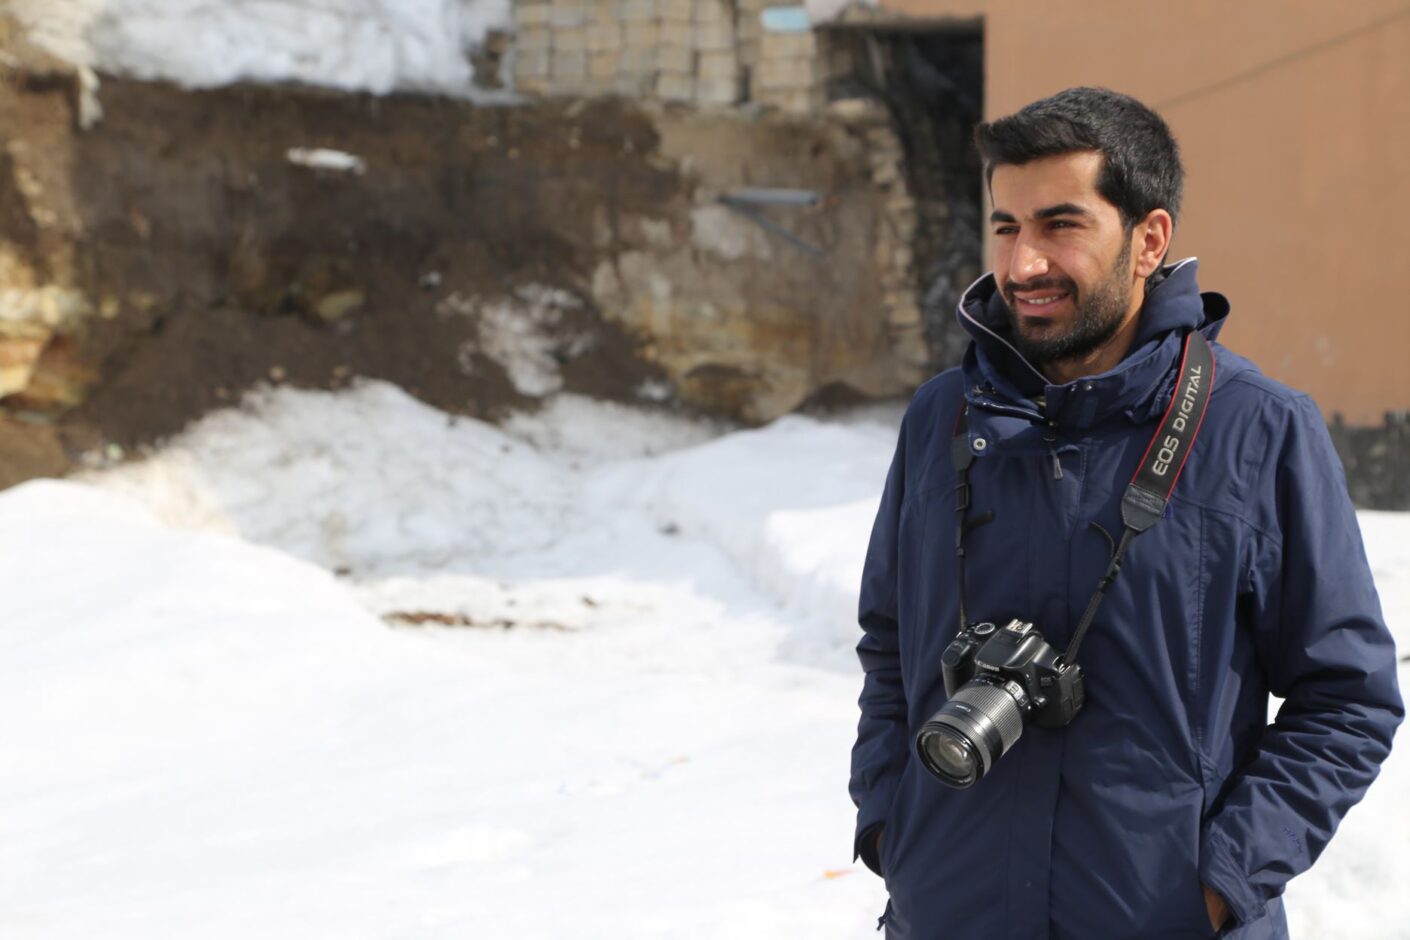 Der kurdische Journalist Nedim Türfent ist seit 2016 inhaftiert, nachdem er über Polizeigewalt in den kurdisch geprägten Regionen der Türkei berichtet hat.ison in Turkey since 2016 – because he reported on police violence